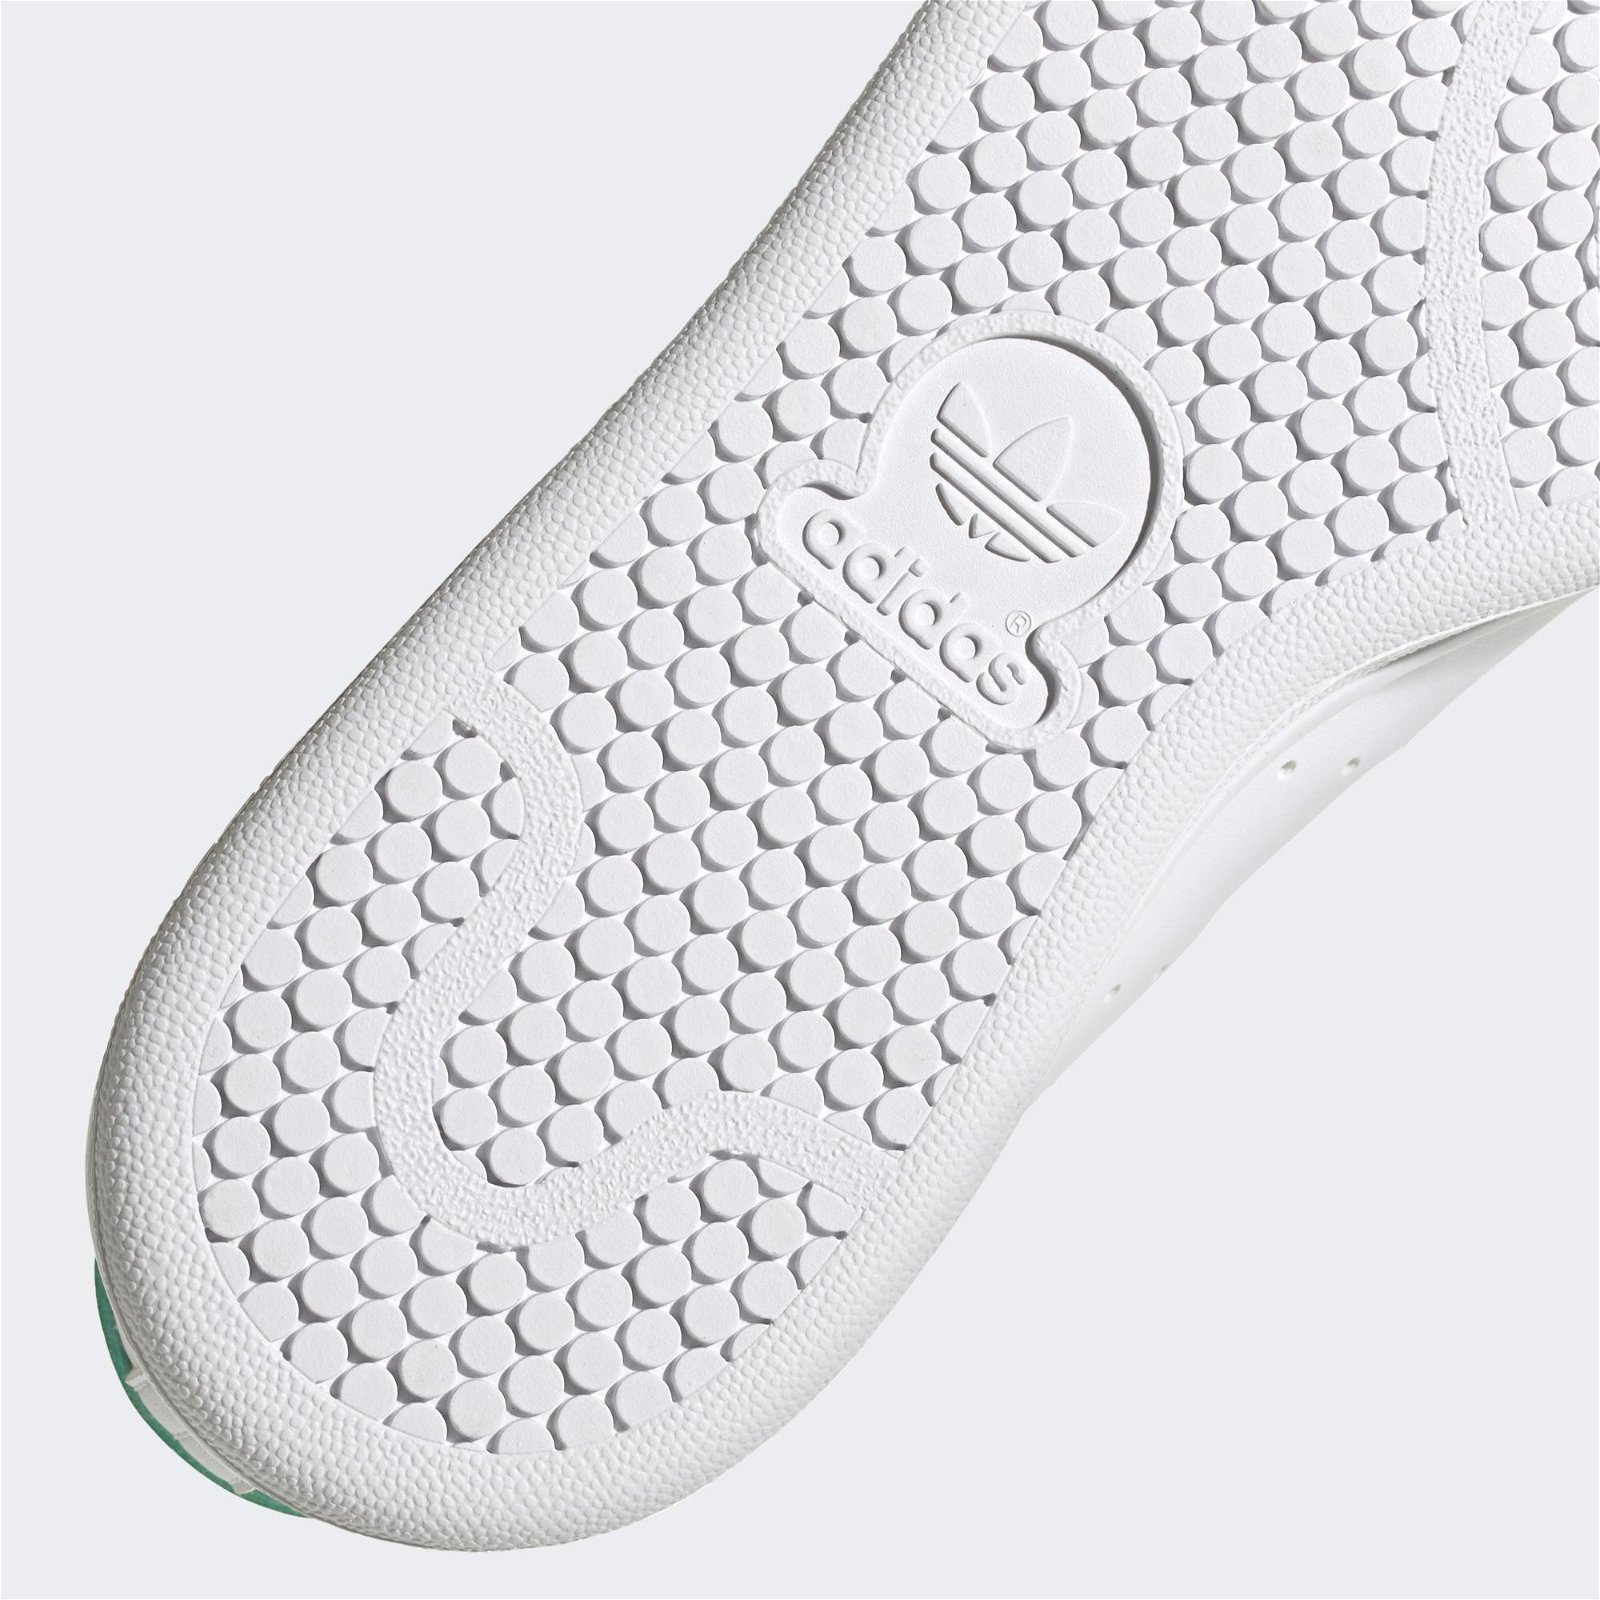 adidas Stan Smith Yeşil-Beyaz Spor Ayakkabı